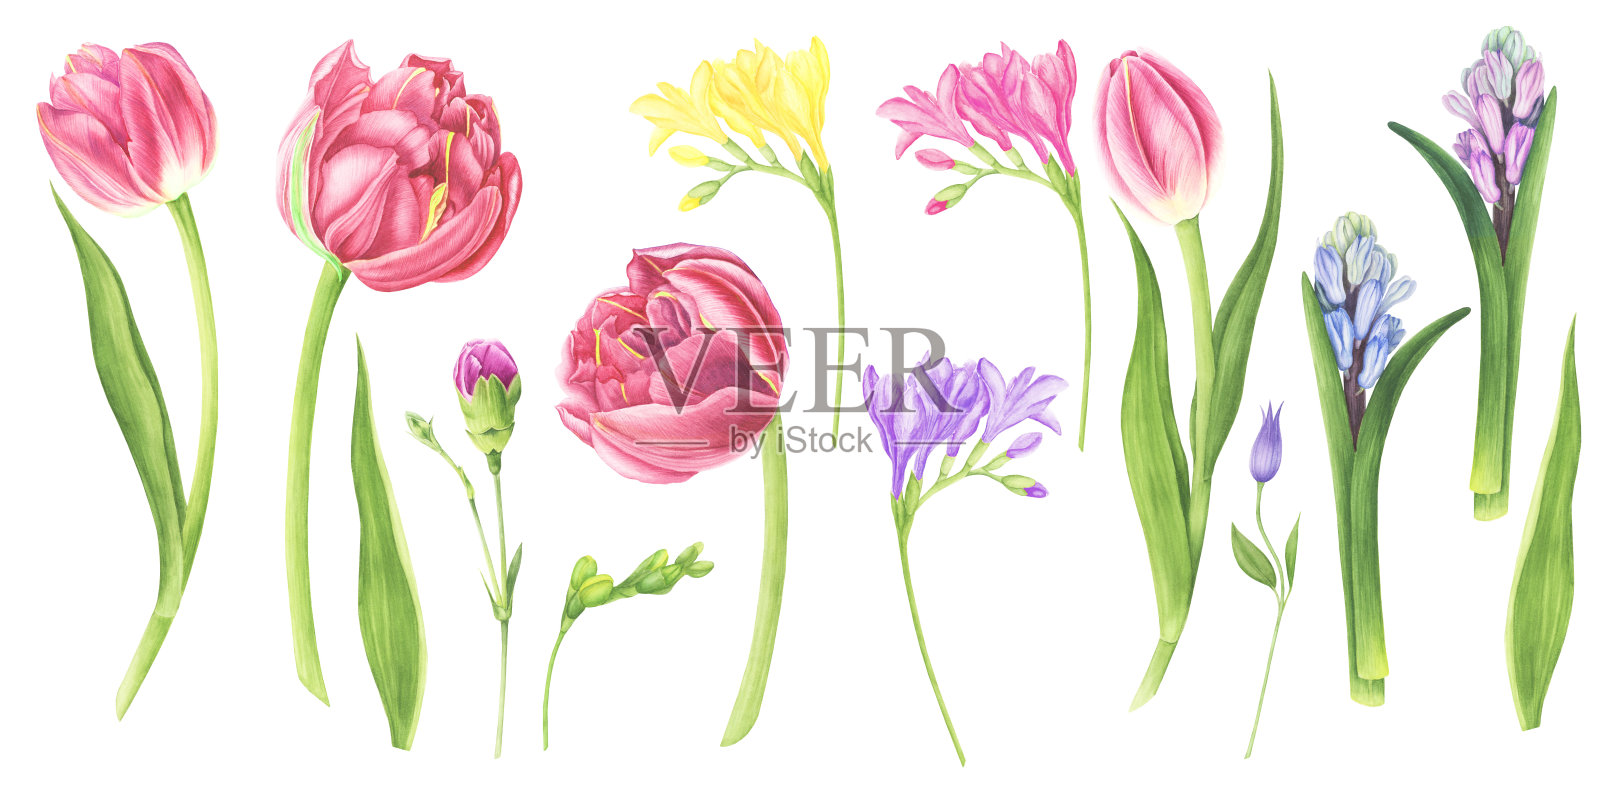 水彩插图一套春天的花:紫色郁金香，铁线莲，风信子，小苍兰和康乃馨。设计元素图片